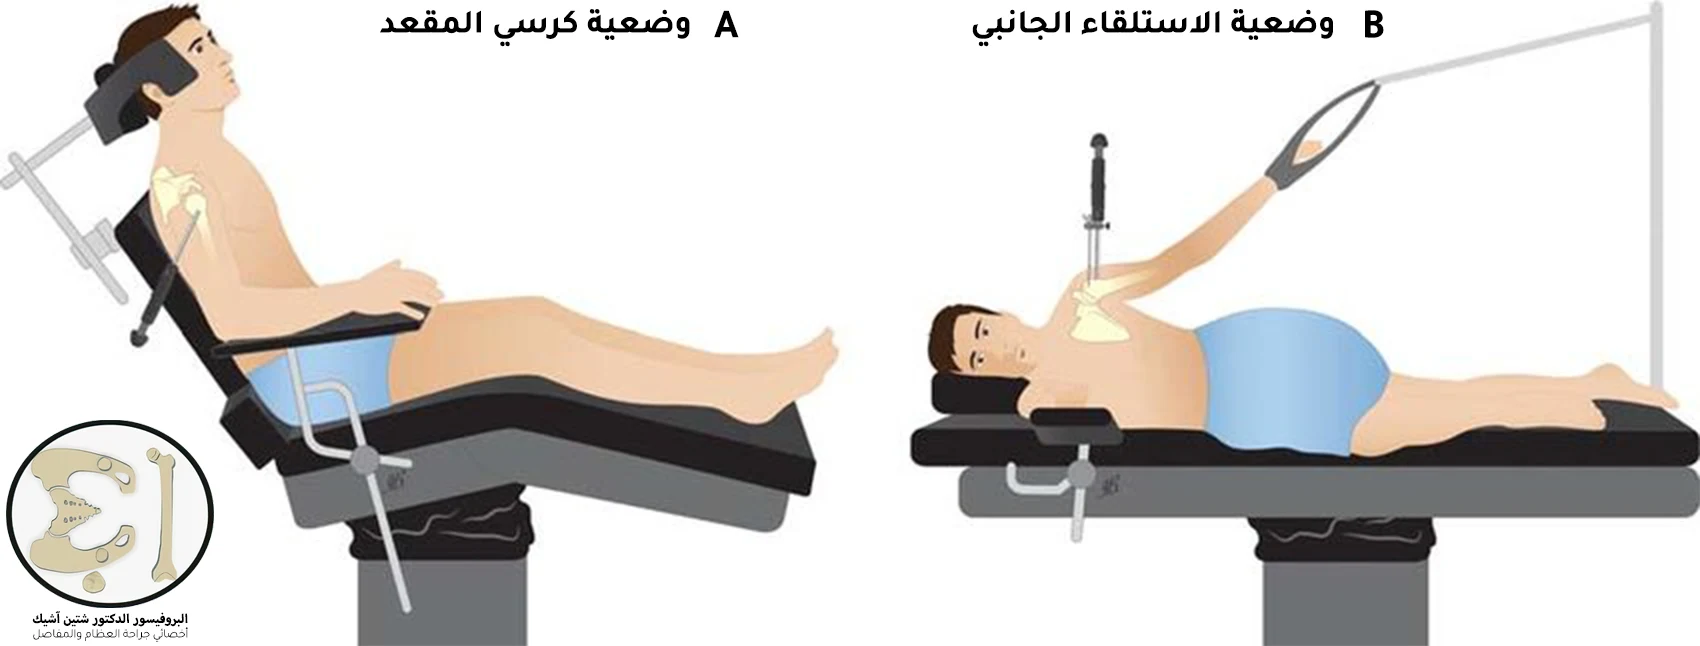 هناك وضعيتين جراحيتين للقيام بعملية الكتف بالمنظار وهي وضعية الاستلقاء الجانبي ووضعية كرسي المقعد